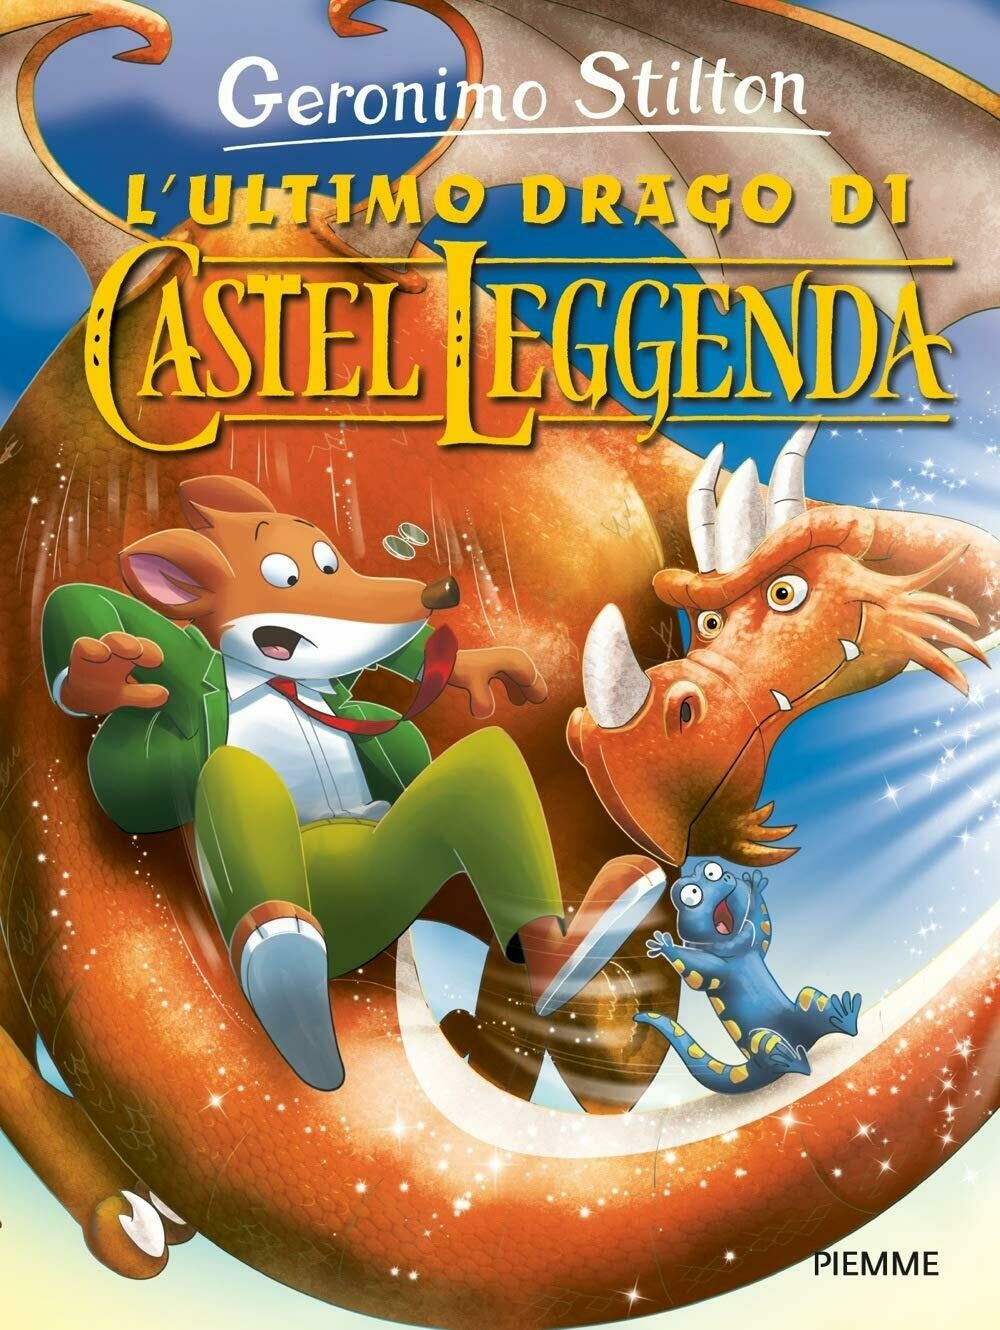 L'ultimo drago di Castel Leggenda